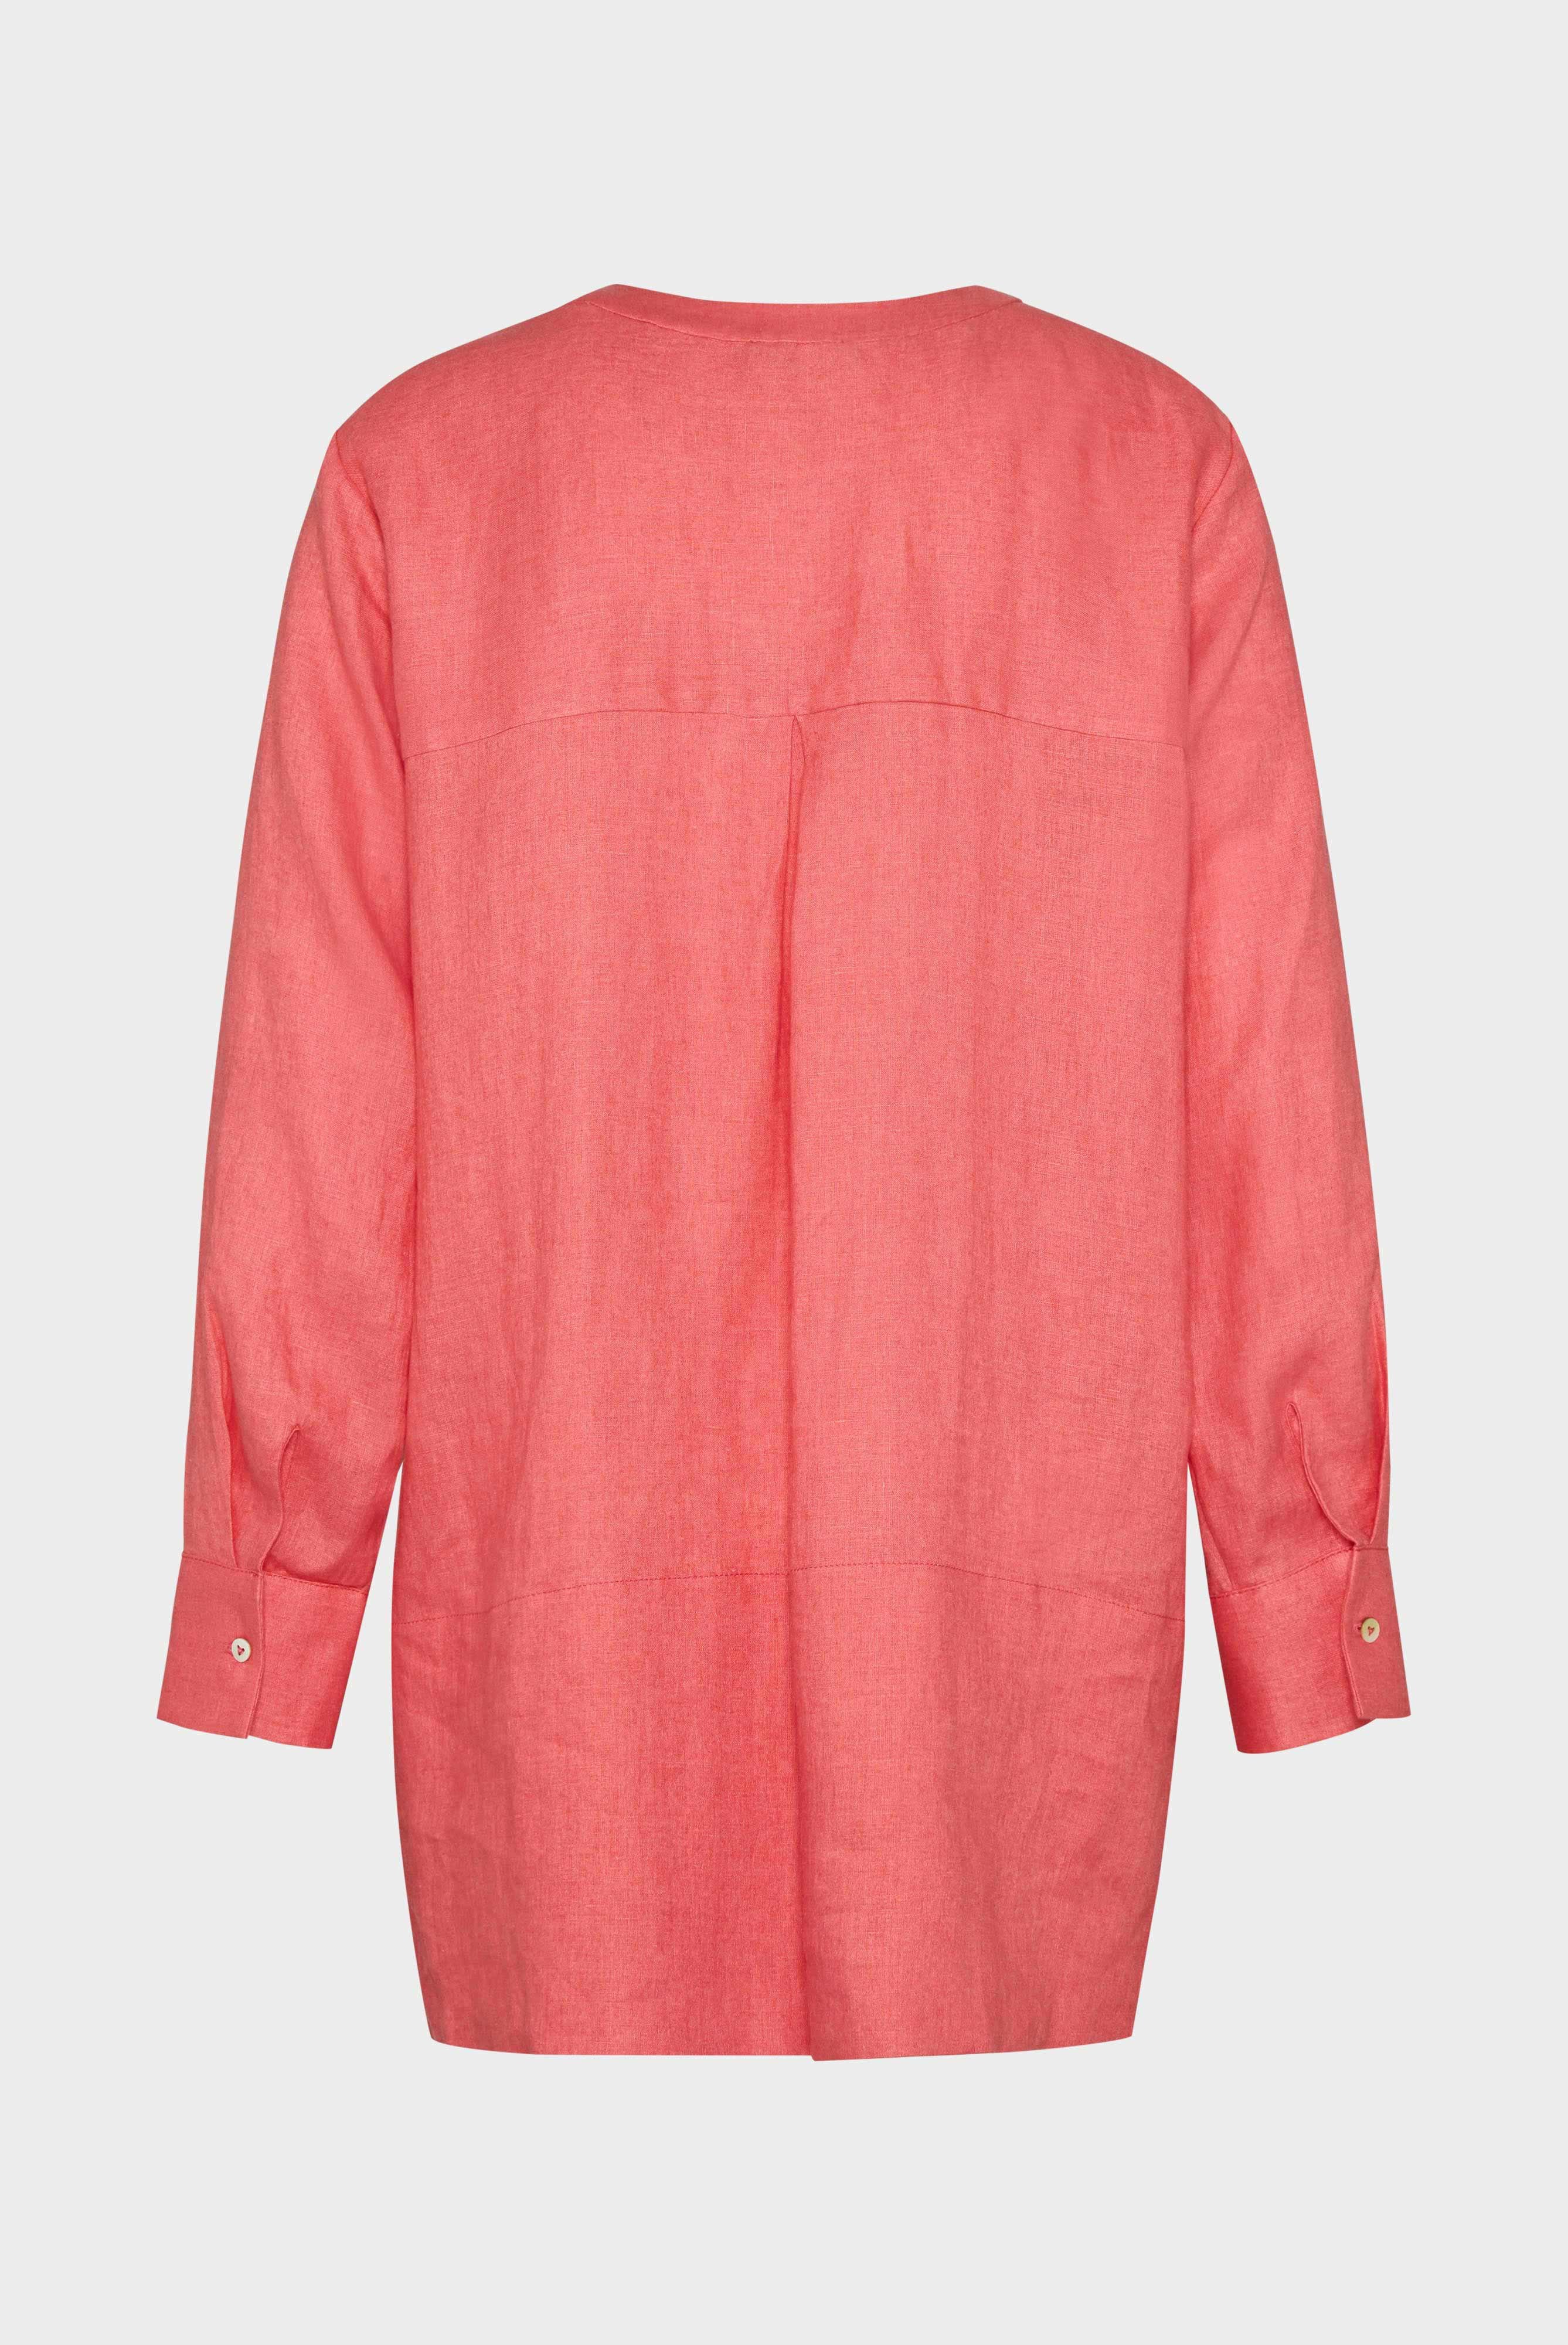 Casual Blouses+Linen tunic blouse+05.526H.P8.150555.440.36